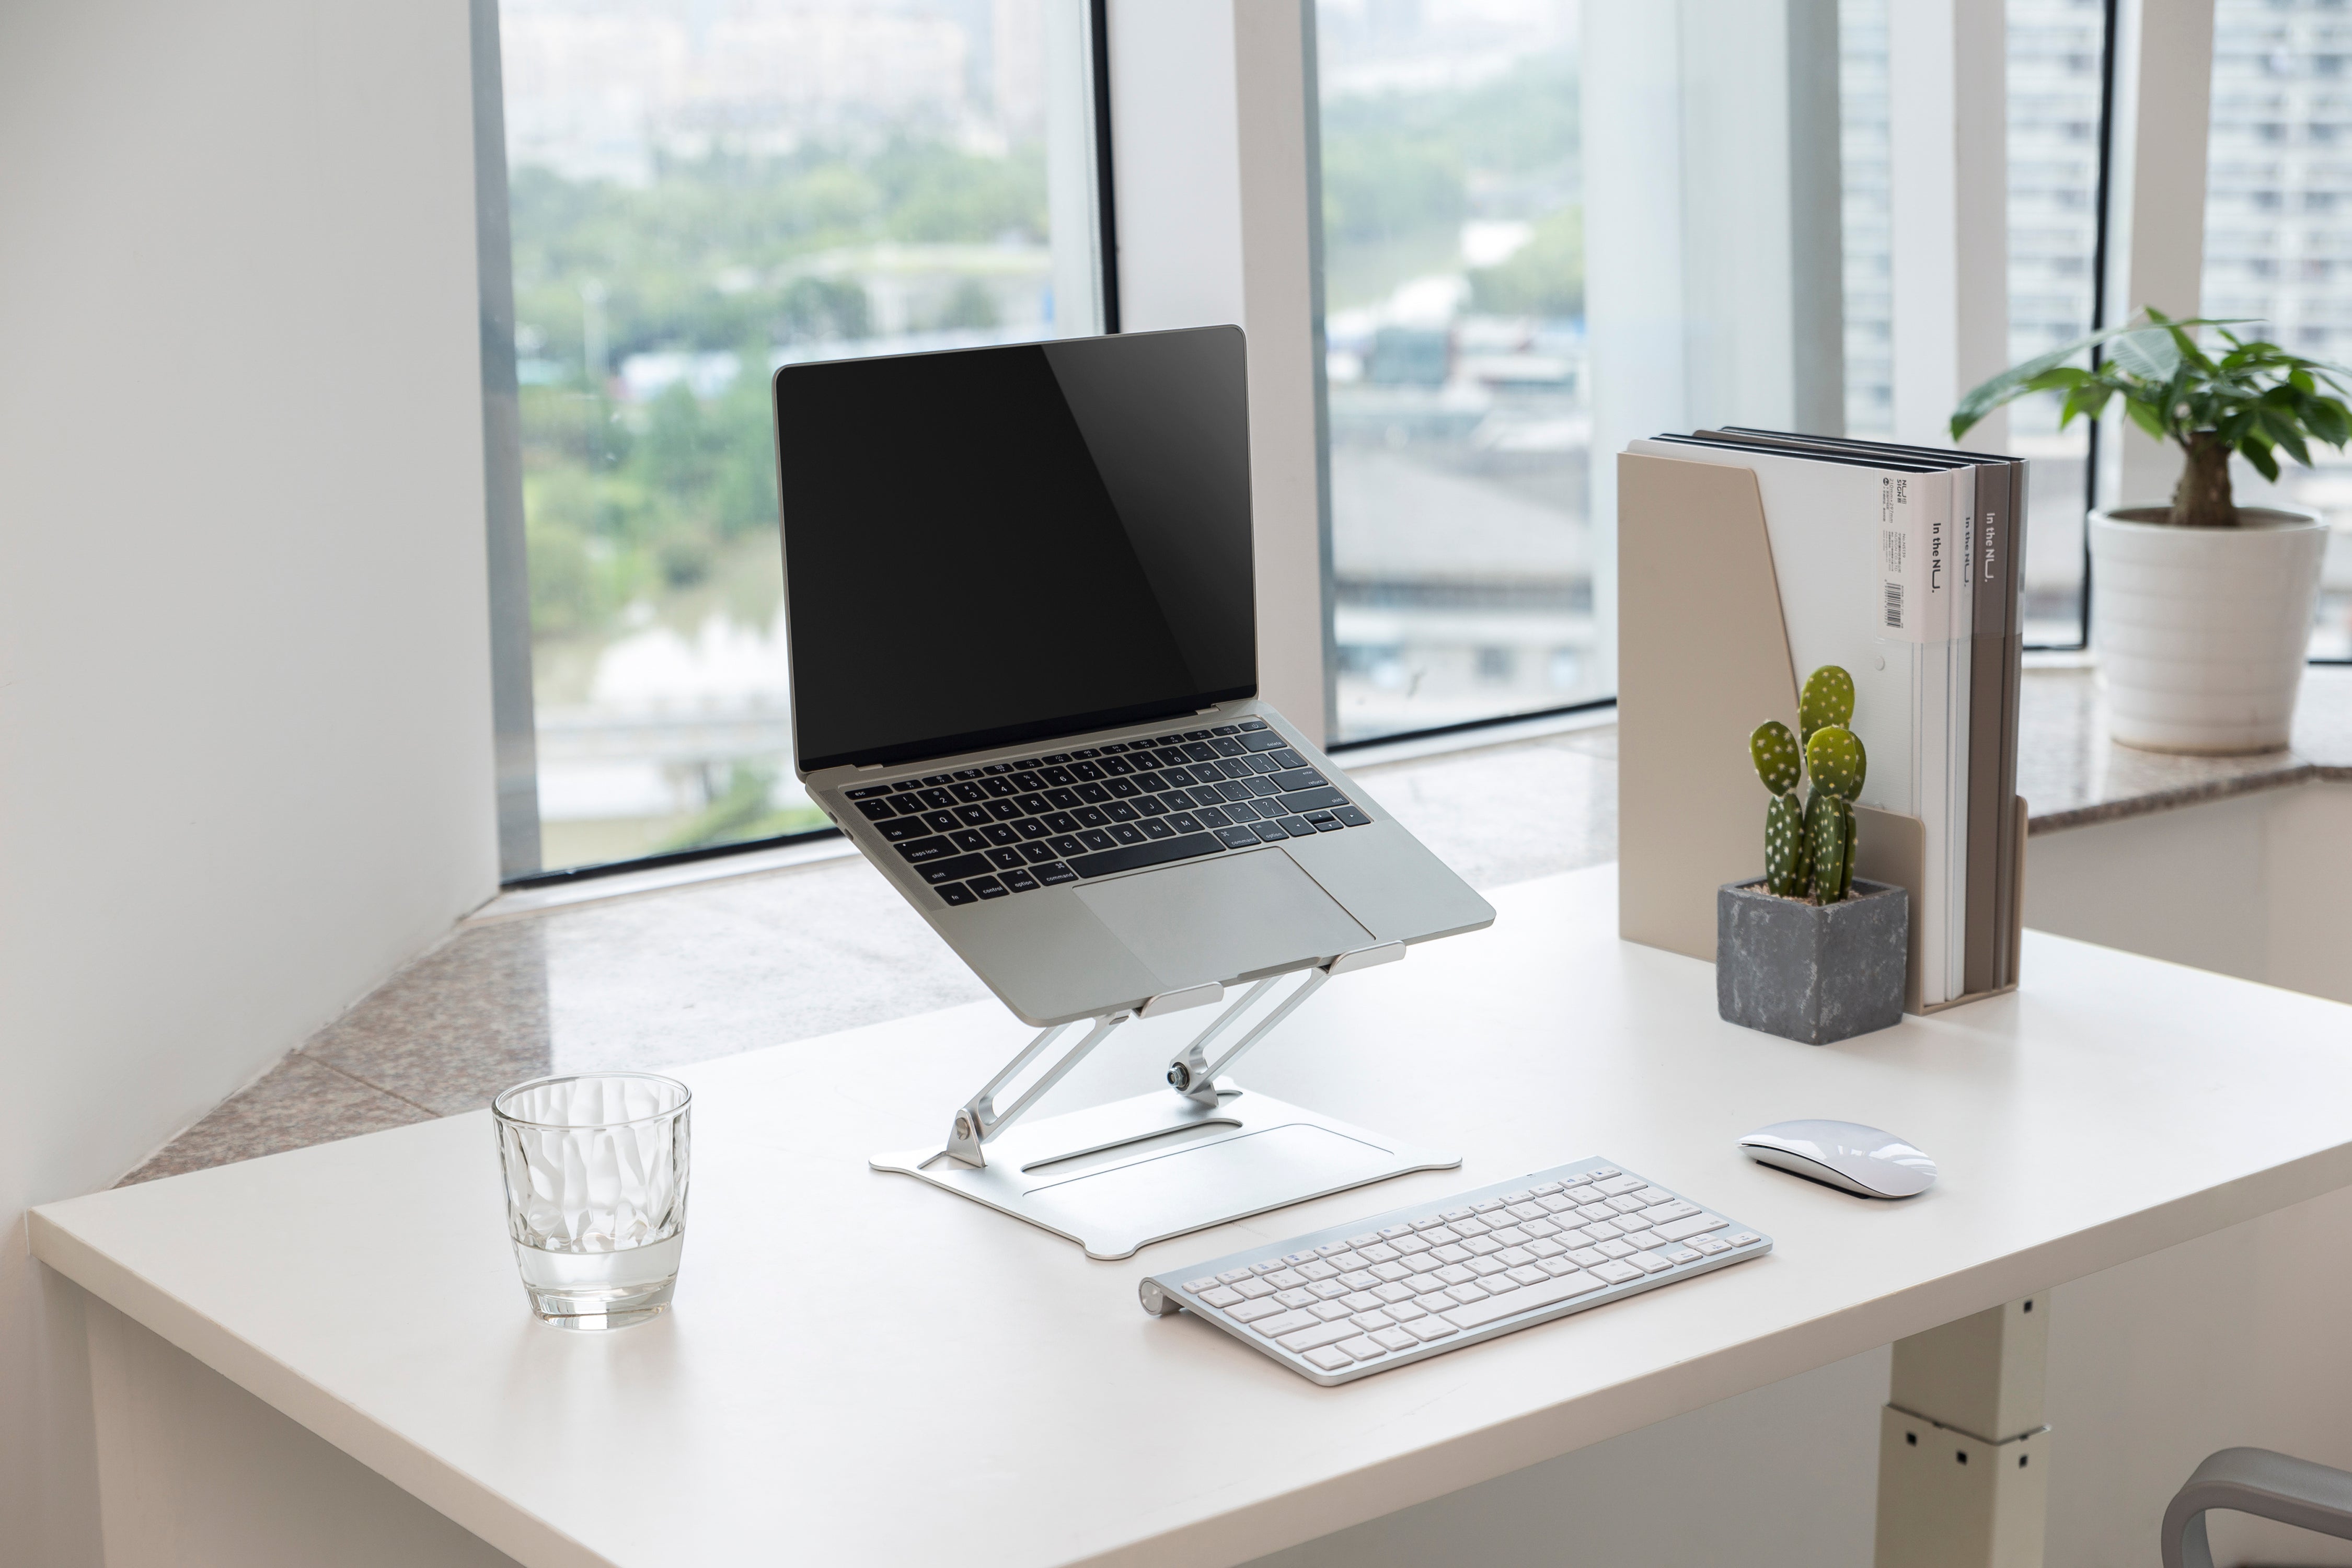 ProperAV Fully Height Adjustable Rising Aluminium Laptop / Tablet Stand - maplin.co.uk